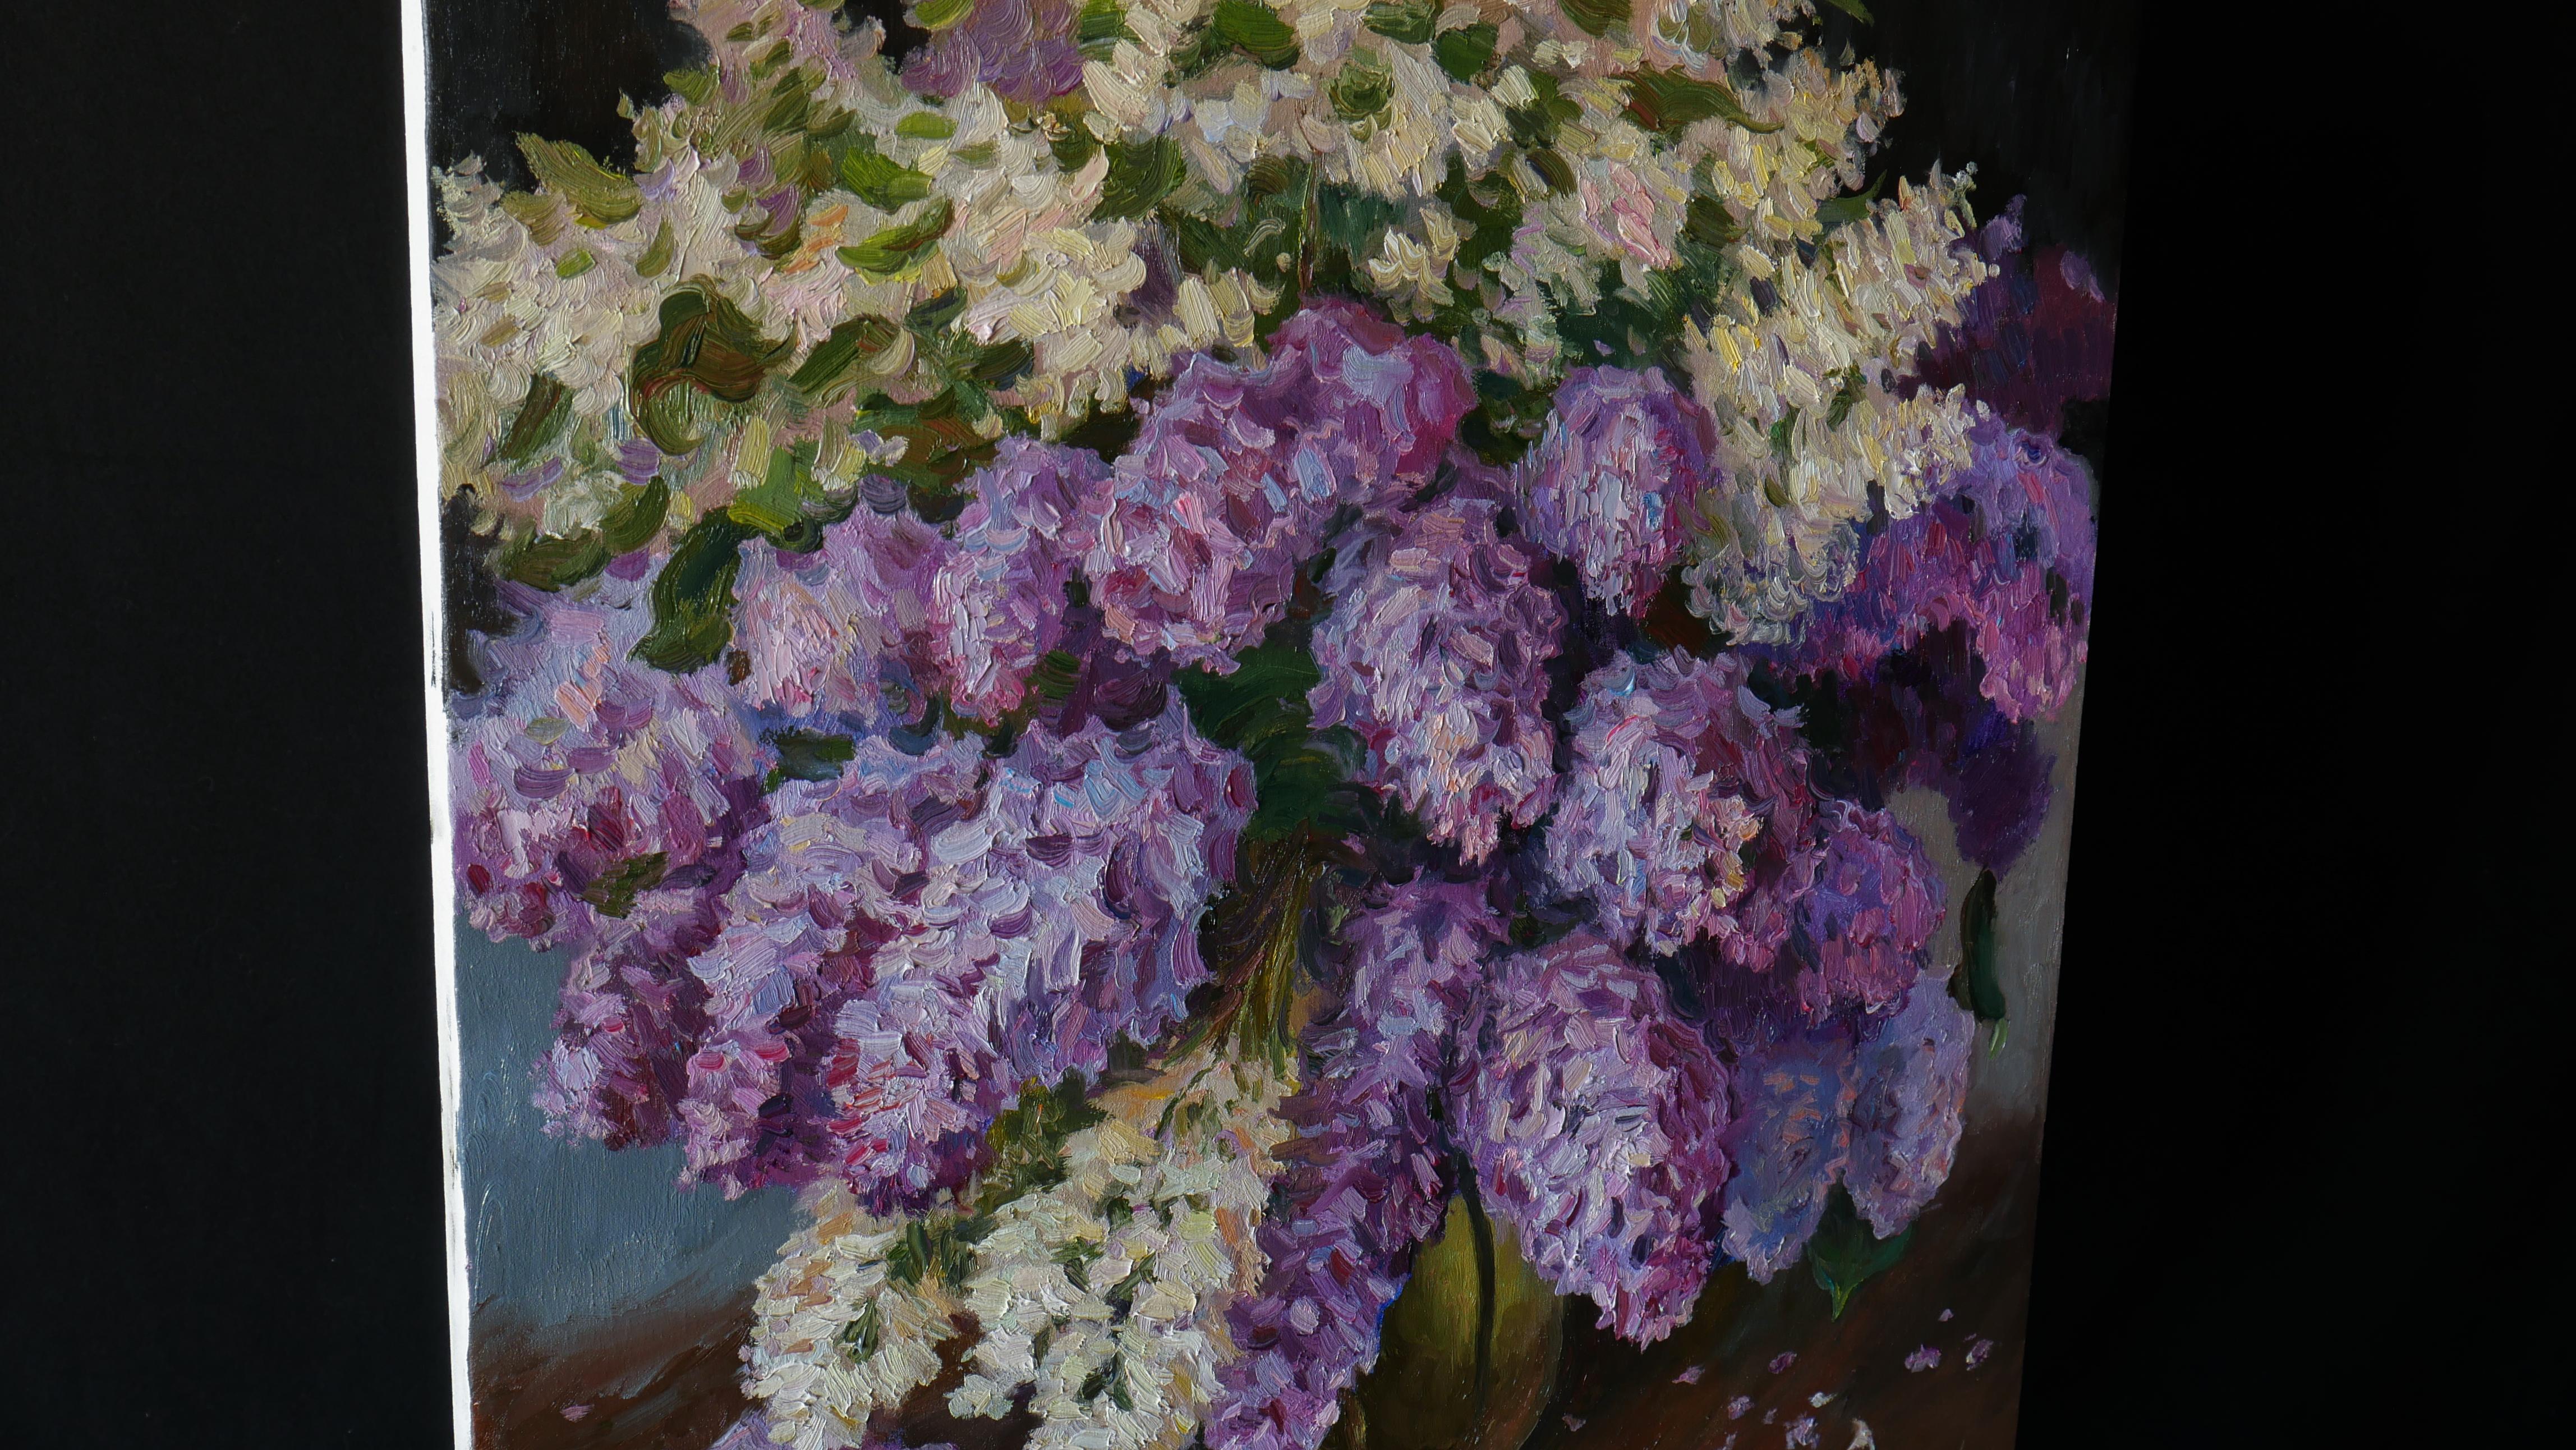 The Bouquet Of Aromatic Lilacs - peinture de nature morte aux lilas - Impressionnisme Painting par Nikolay Dmitriev